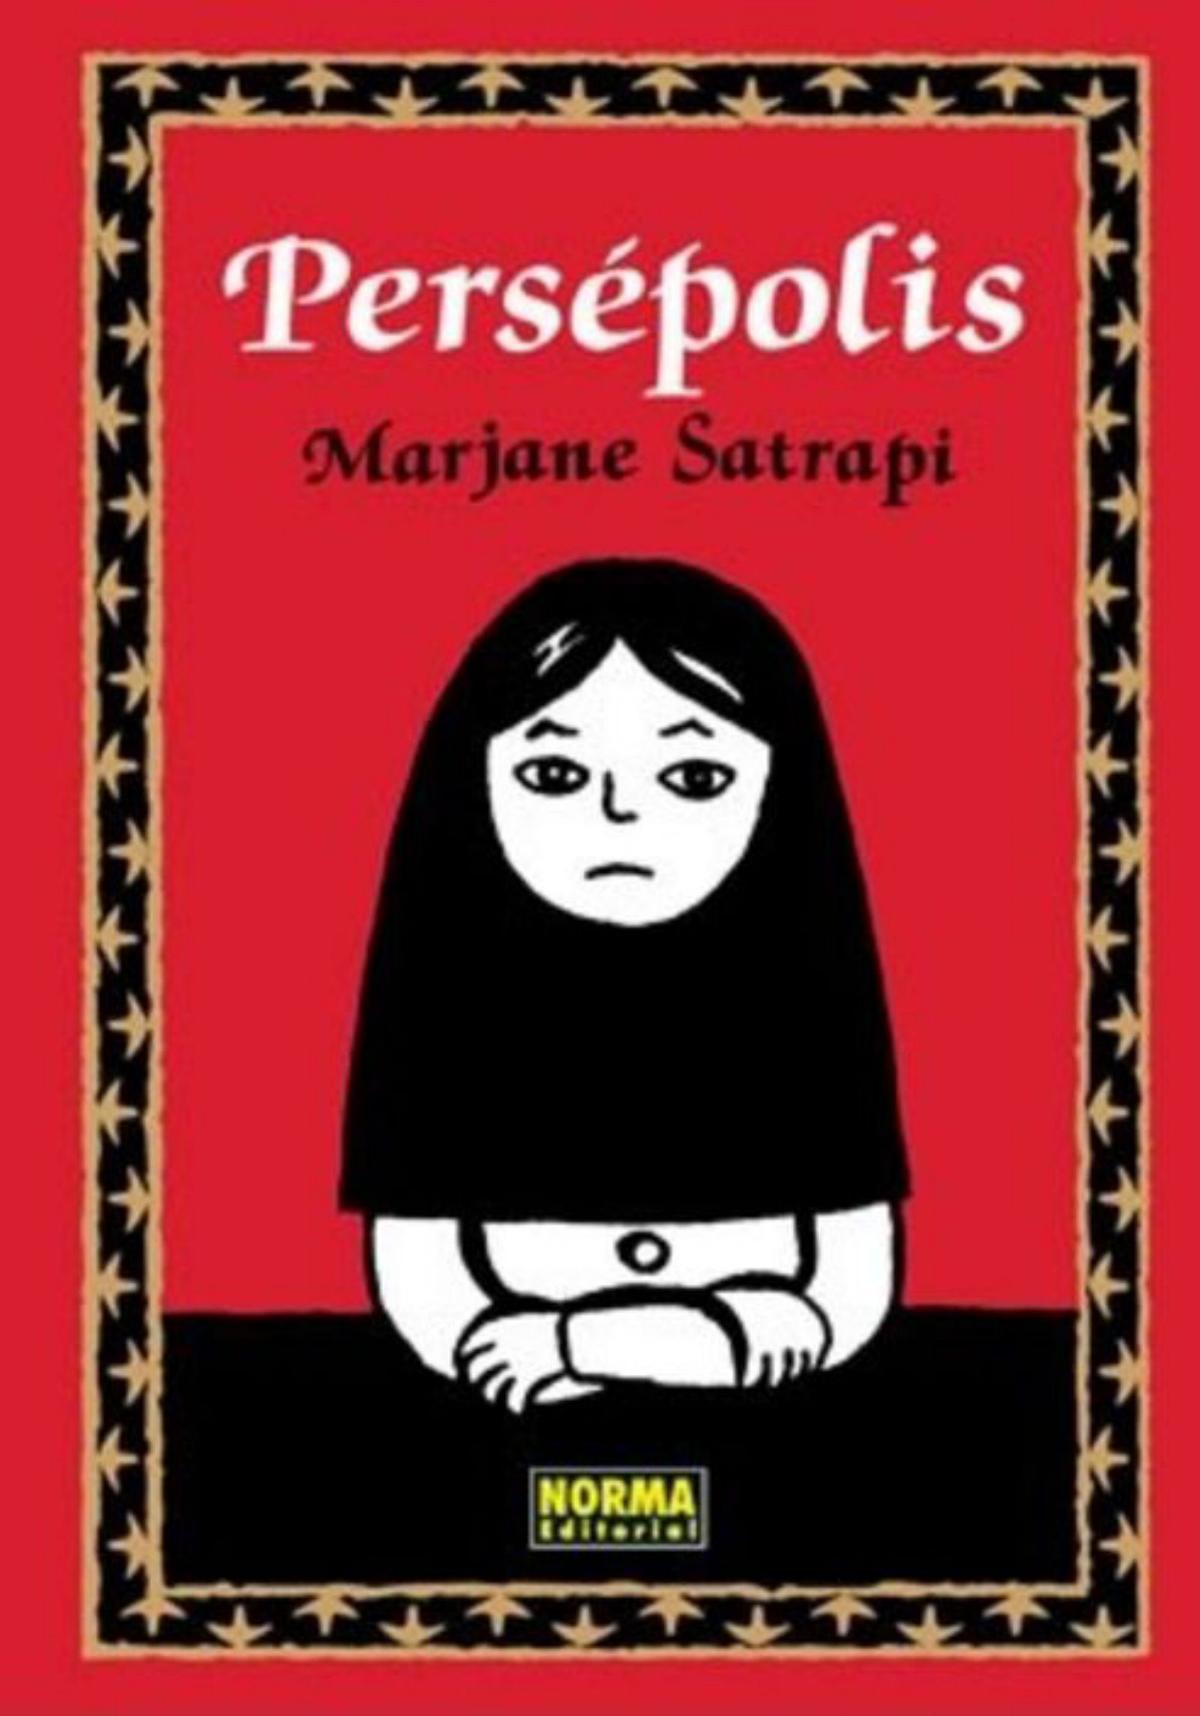 Portada de la novela gráfica 
«Persépolis».